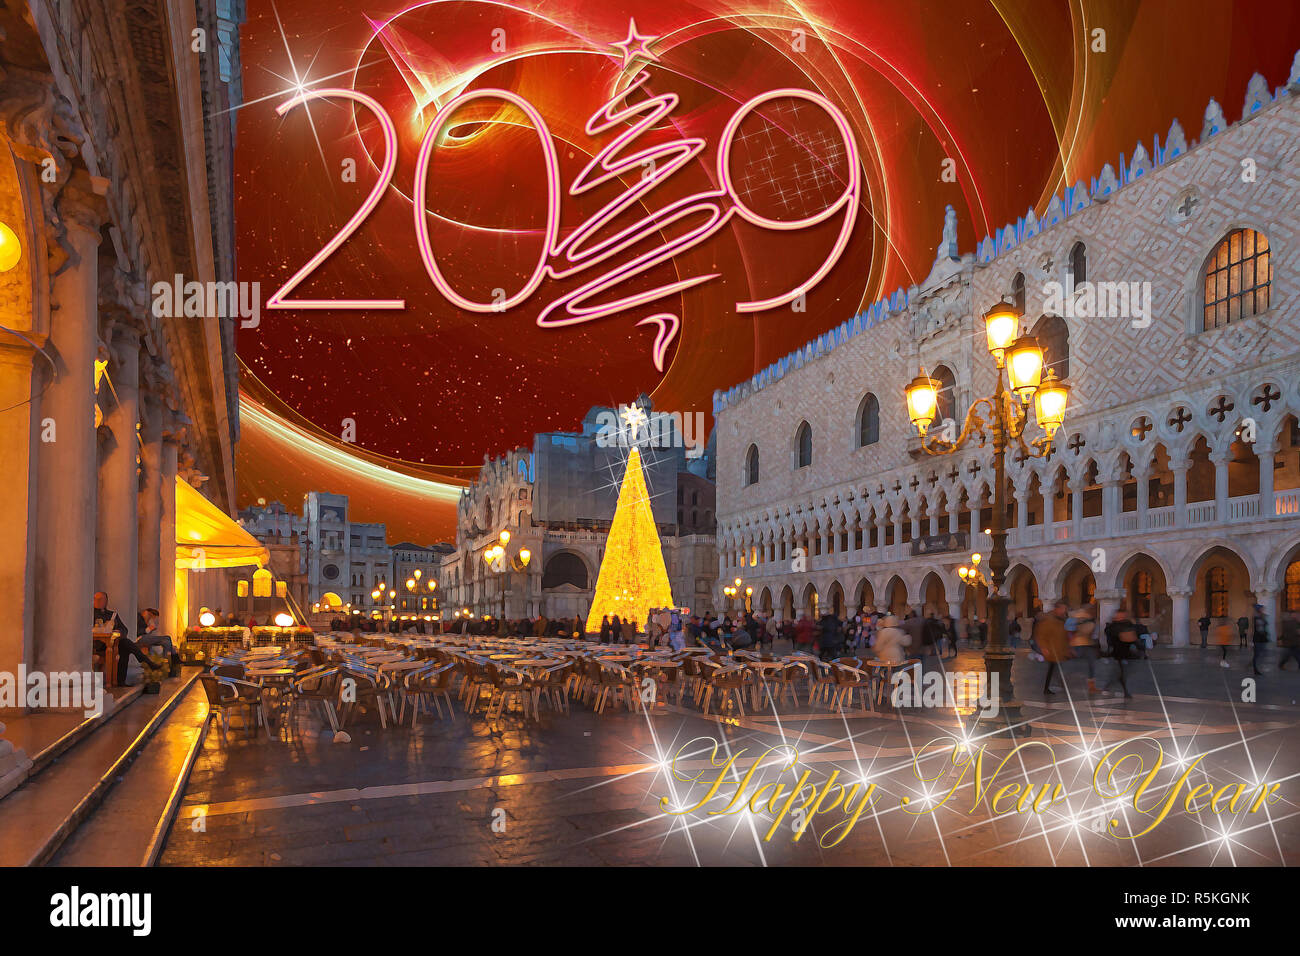 Heureux nouvel an 2019 Carte de souhaits avec fond coloré de la Place Saint Marc à Venise et fantasy sky Banque D'Images